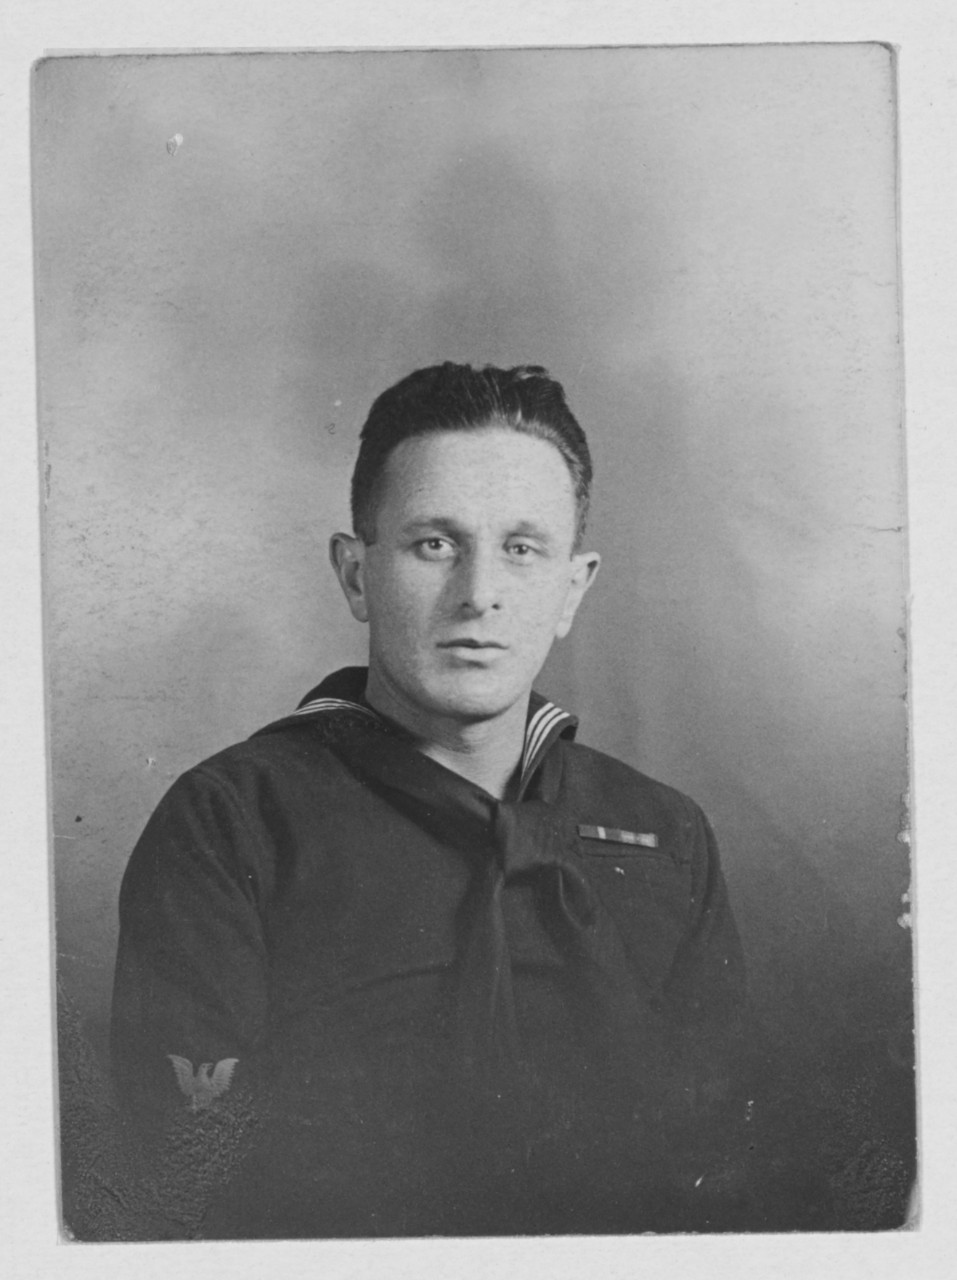 Udolfsky, David. G. M. 2nd class, USN. (Navy Cross)